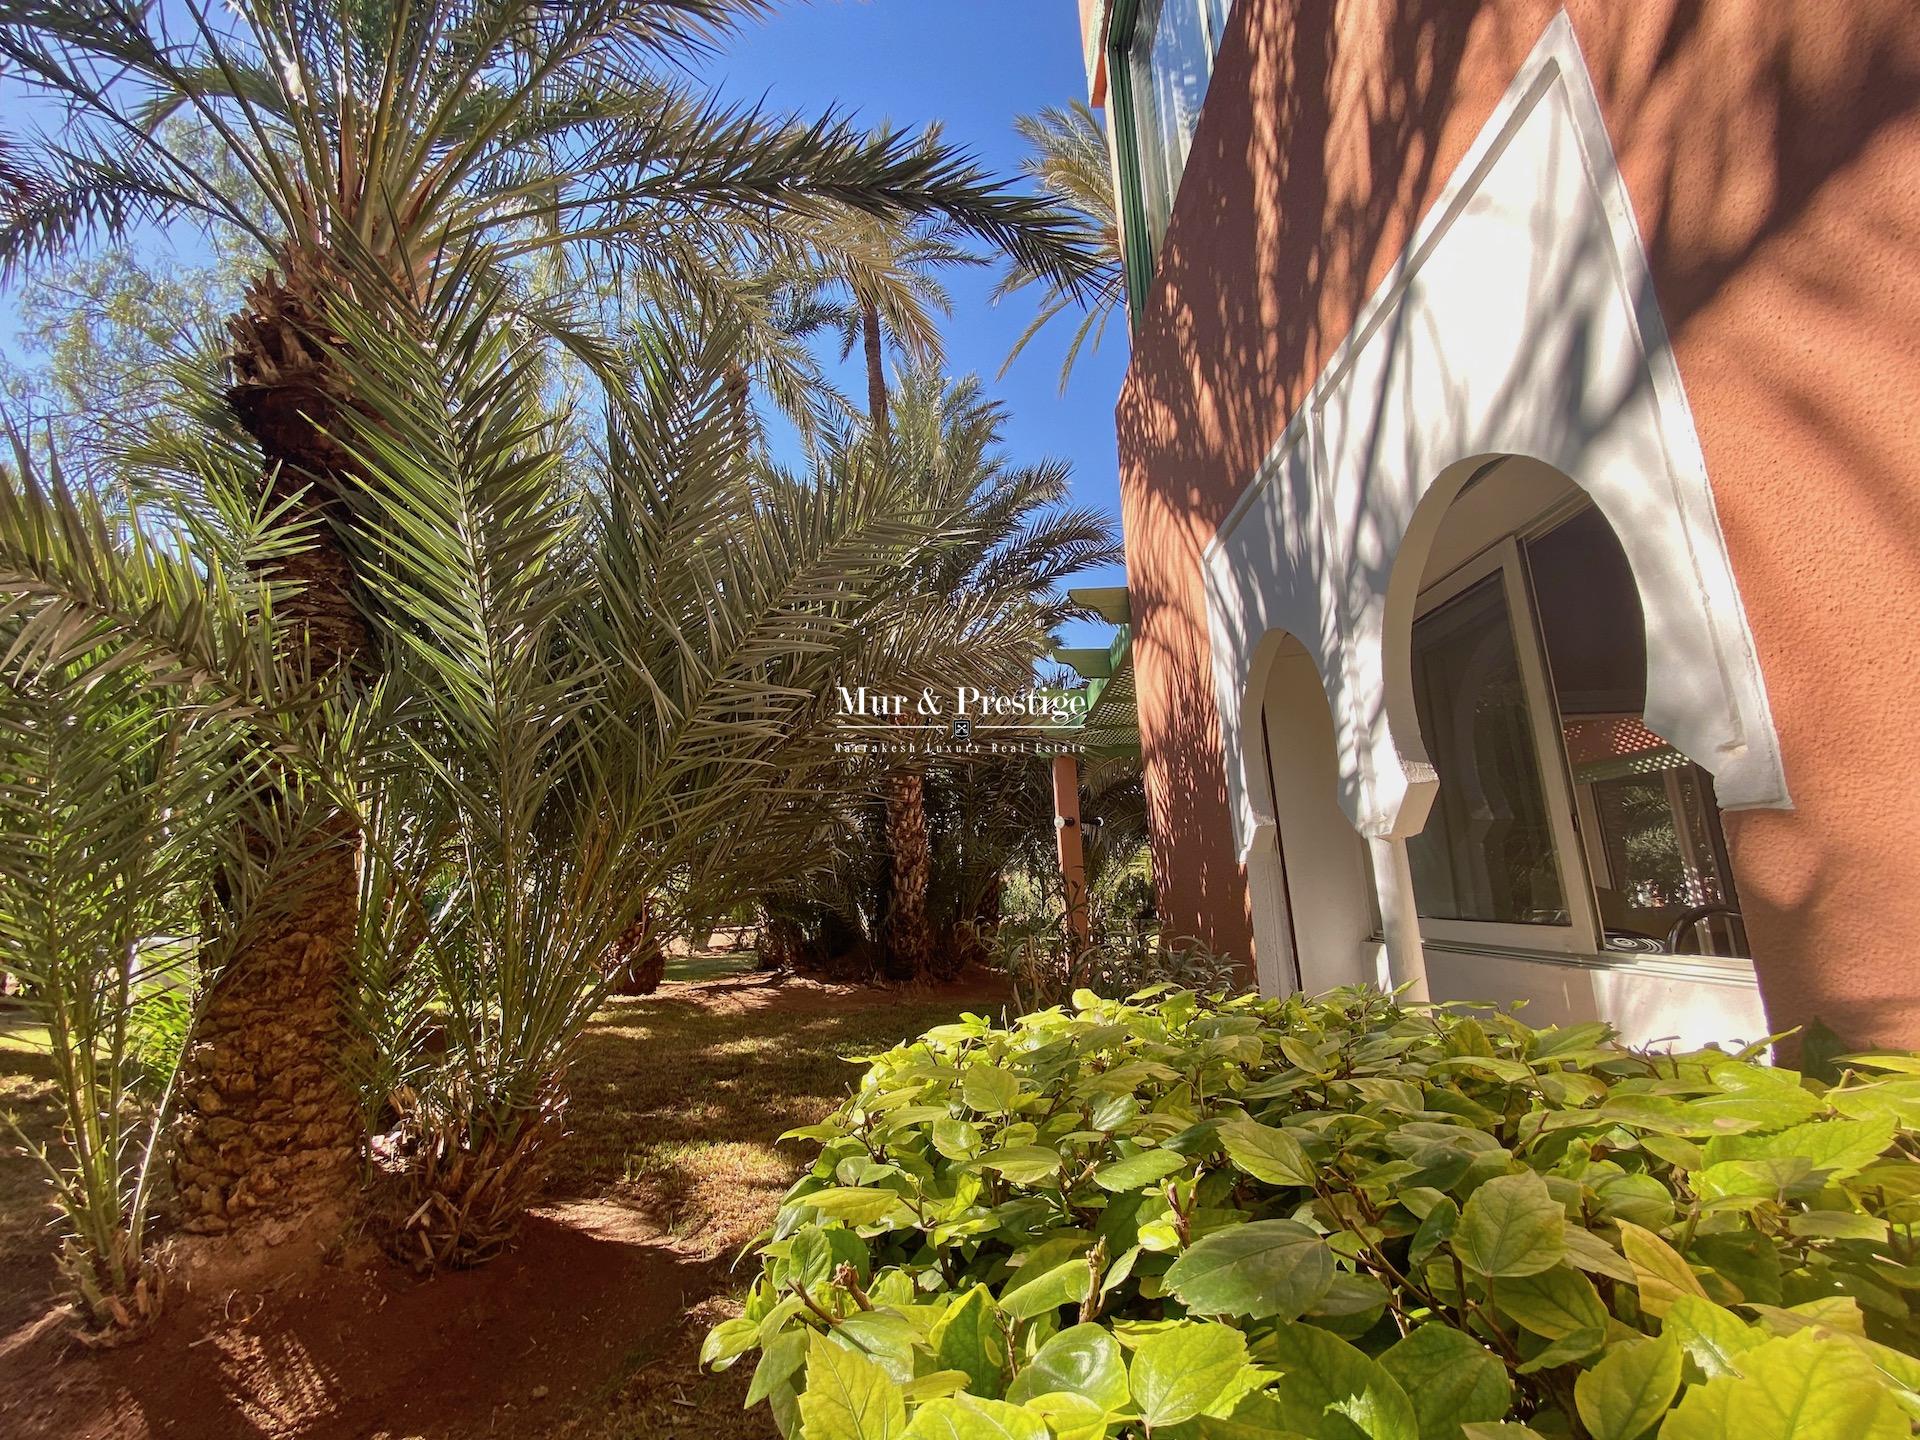 Vente Appartement 3 chambres à la Palmeraie Marrakech